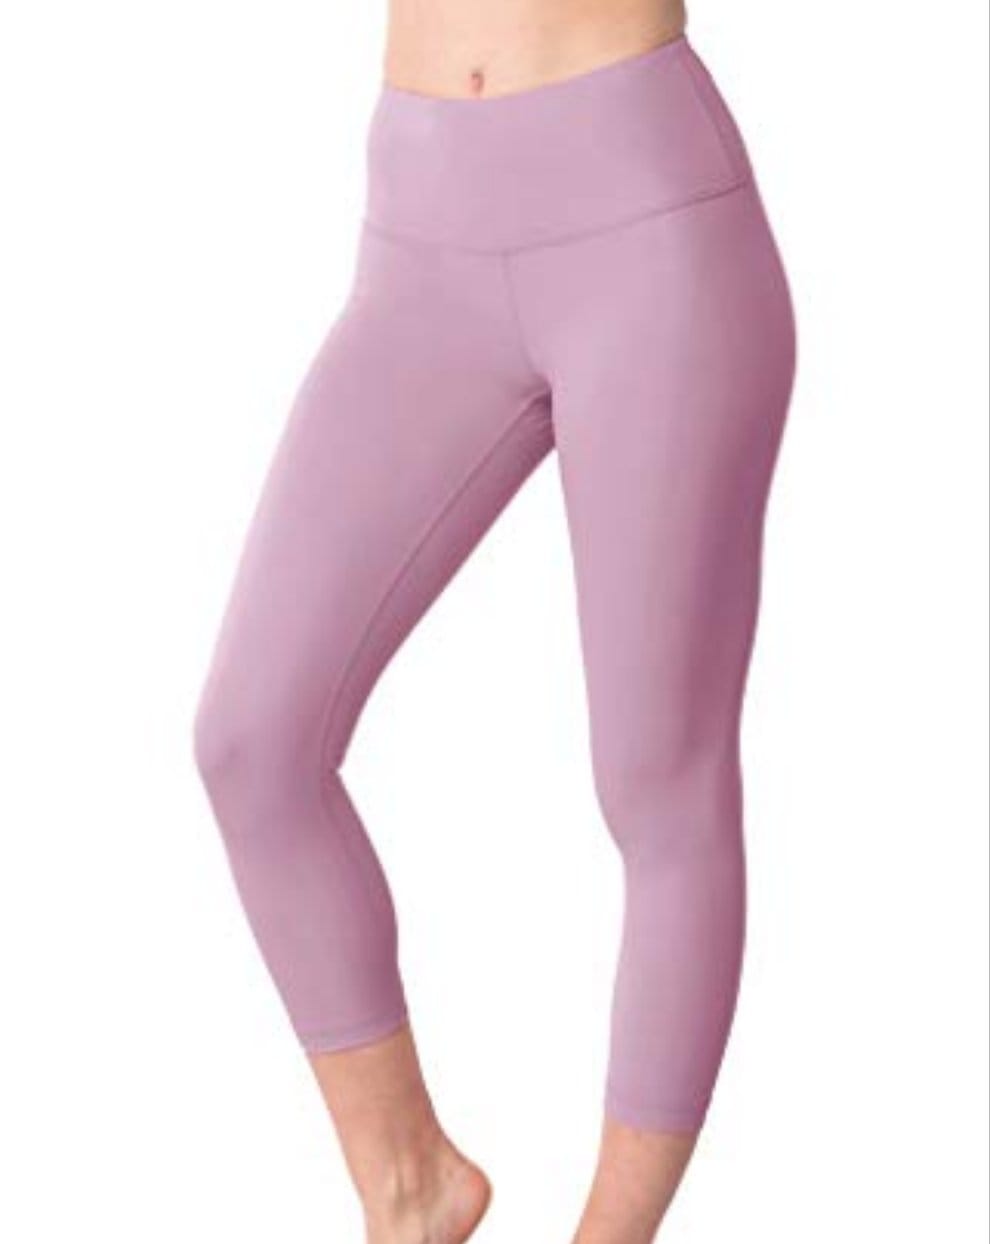 Yogalicious High Waist Ultra Soft Lightweight Capris - Dawn Pink Lux